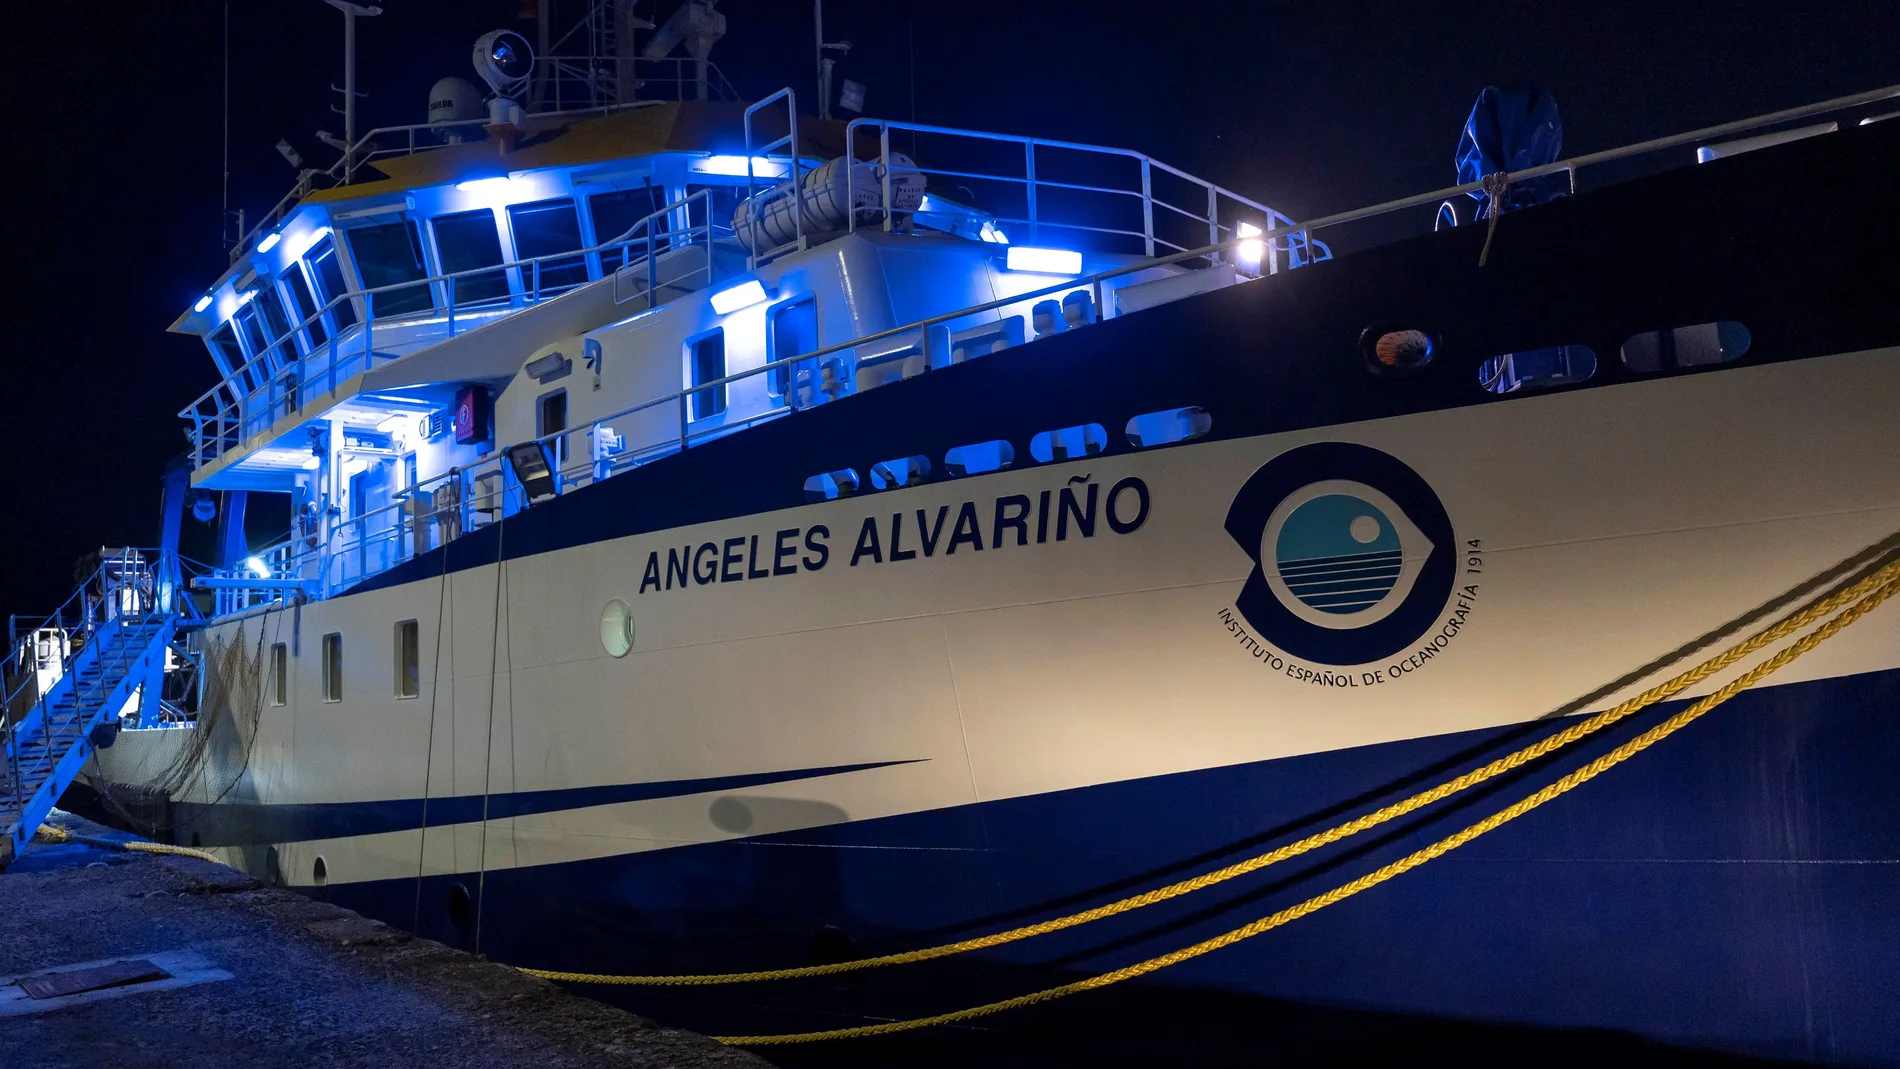 El buque oceanográfico "Ángeles Alvariño" dotado con un sonar de barrido lateral